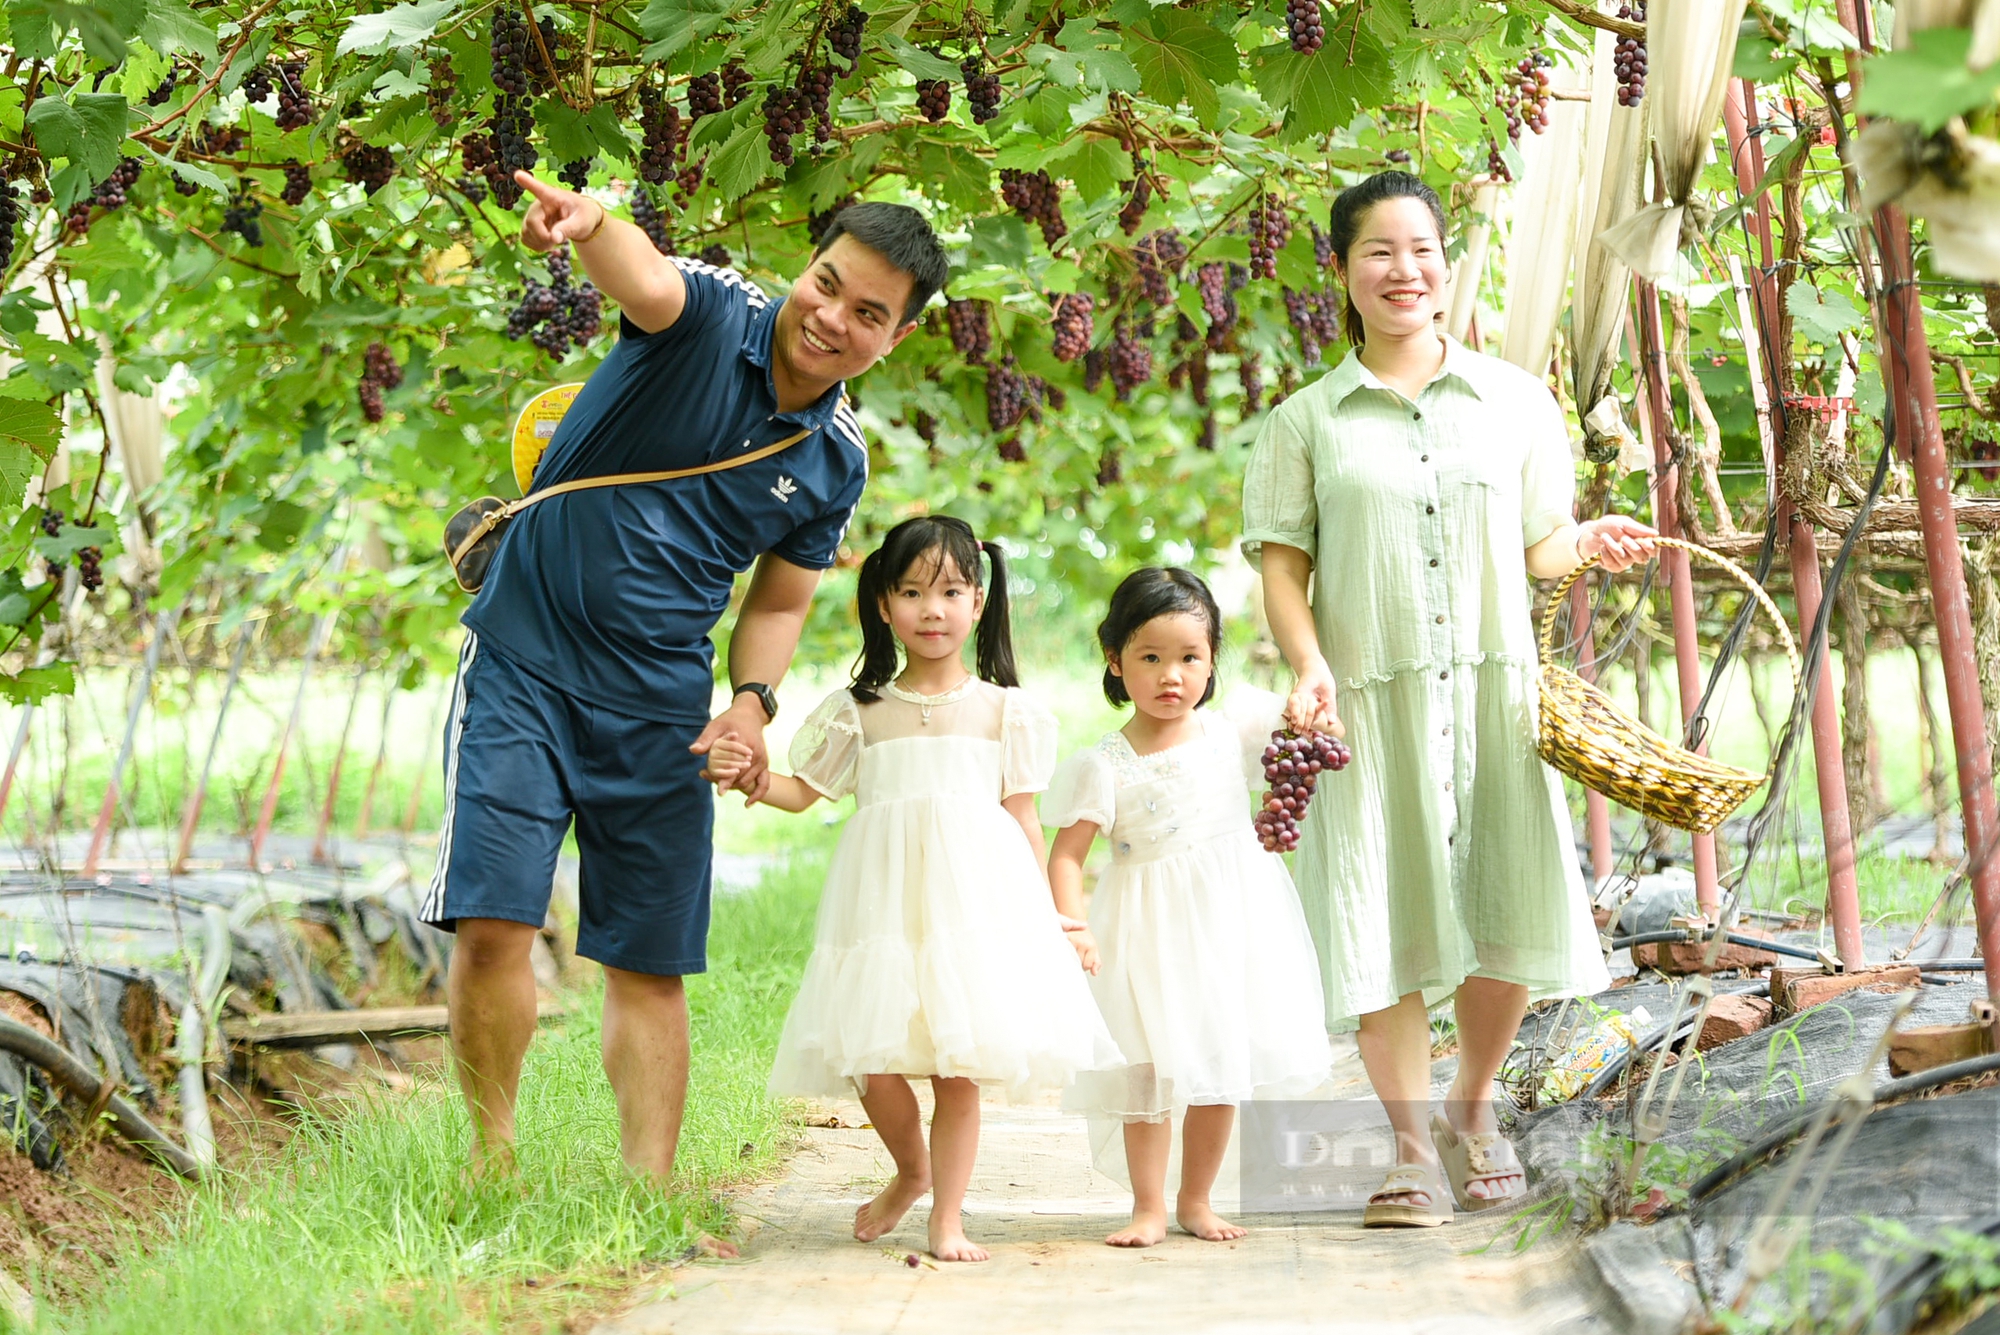 Vườn nho hạ đen trĩu quả ở ngoại thành Hà Nội thu hút người dân đến check-in mỗi ngày- Ảnh 8.